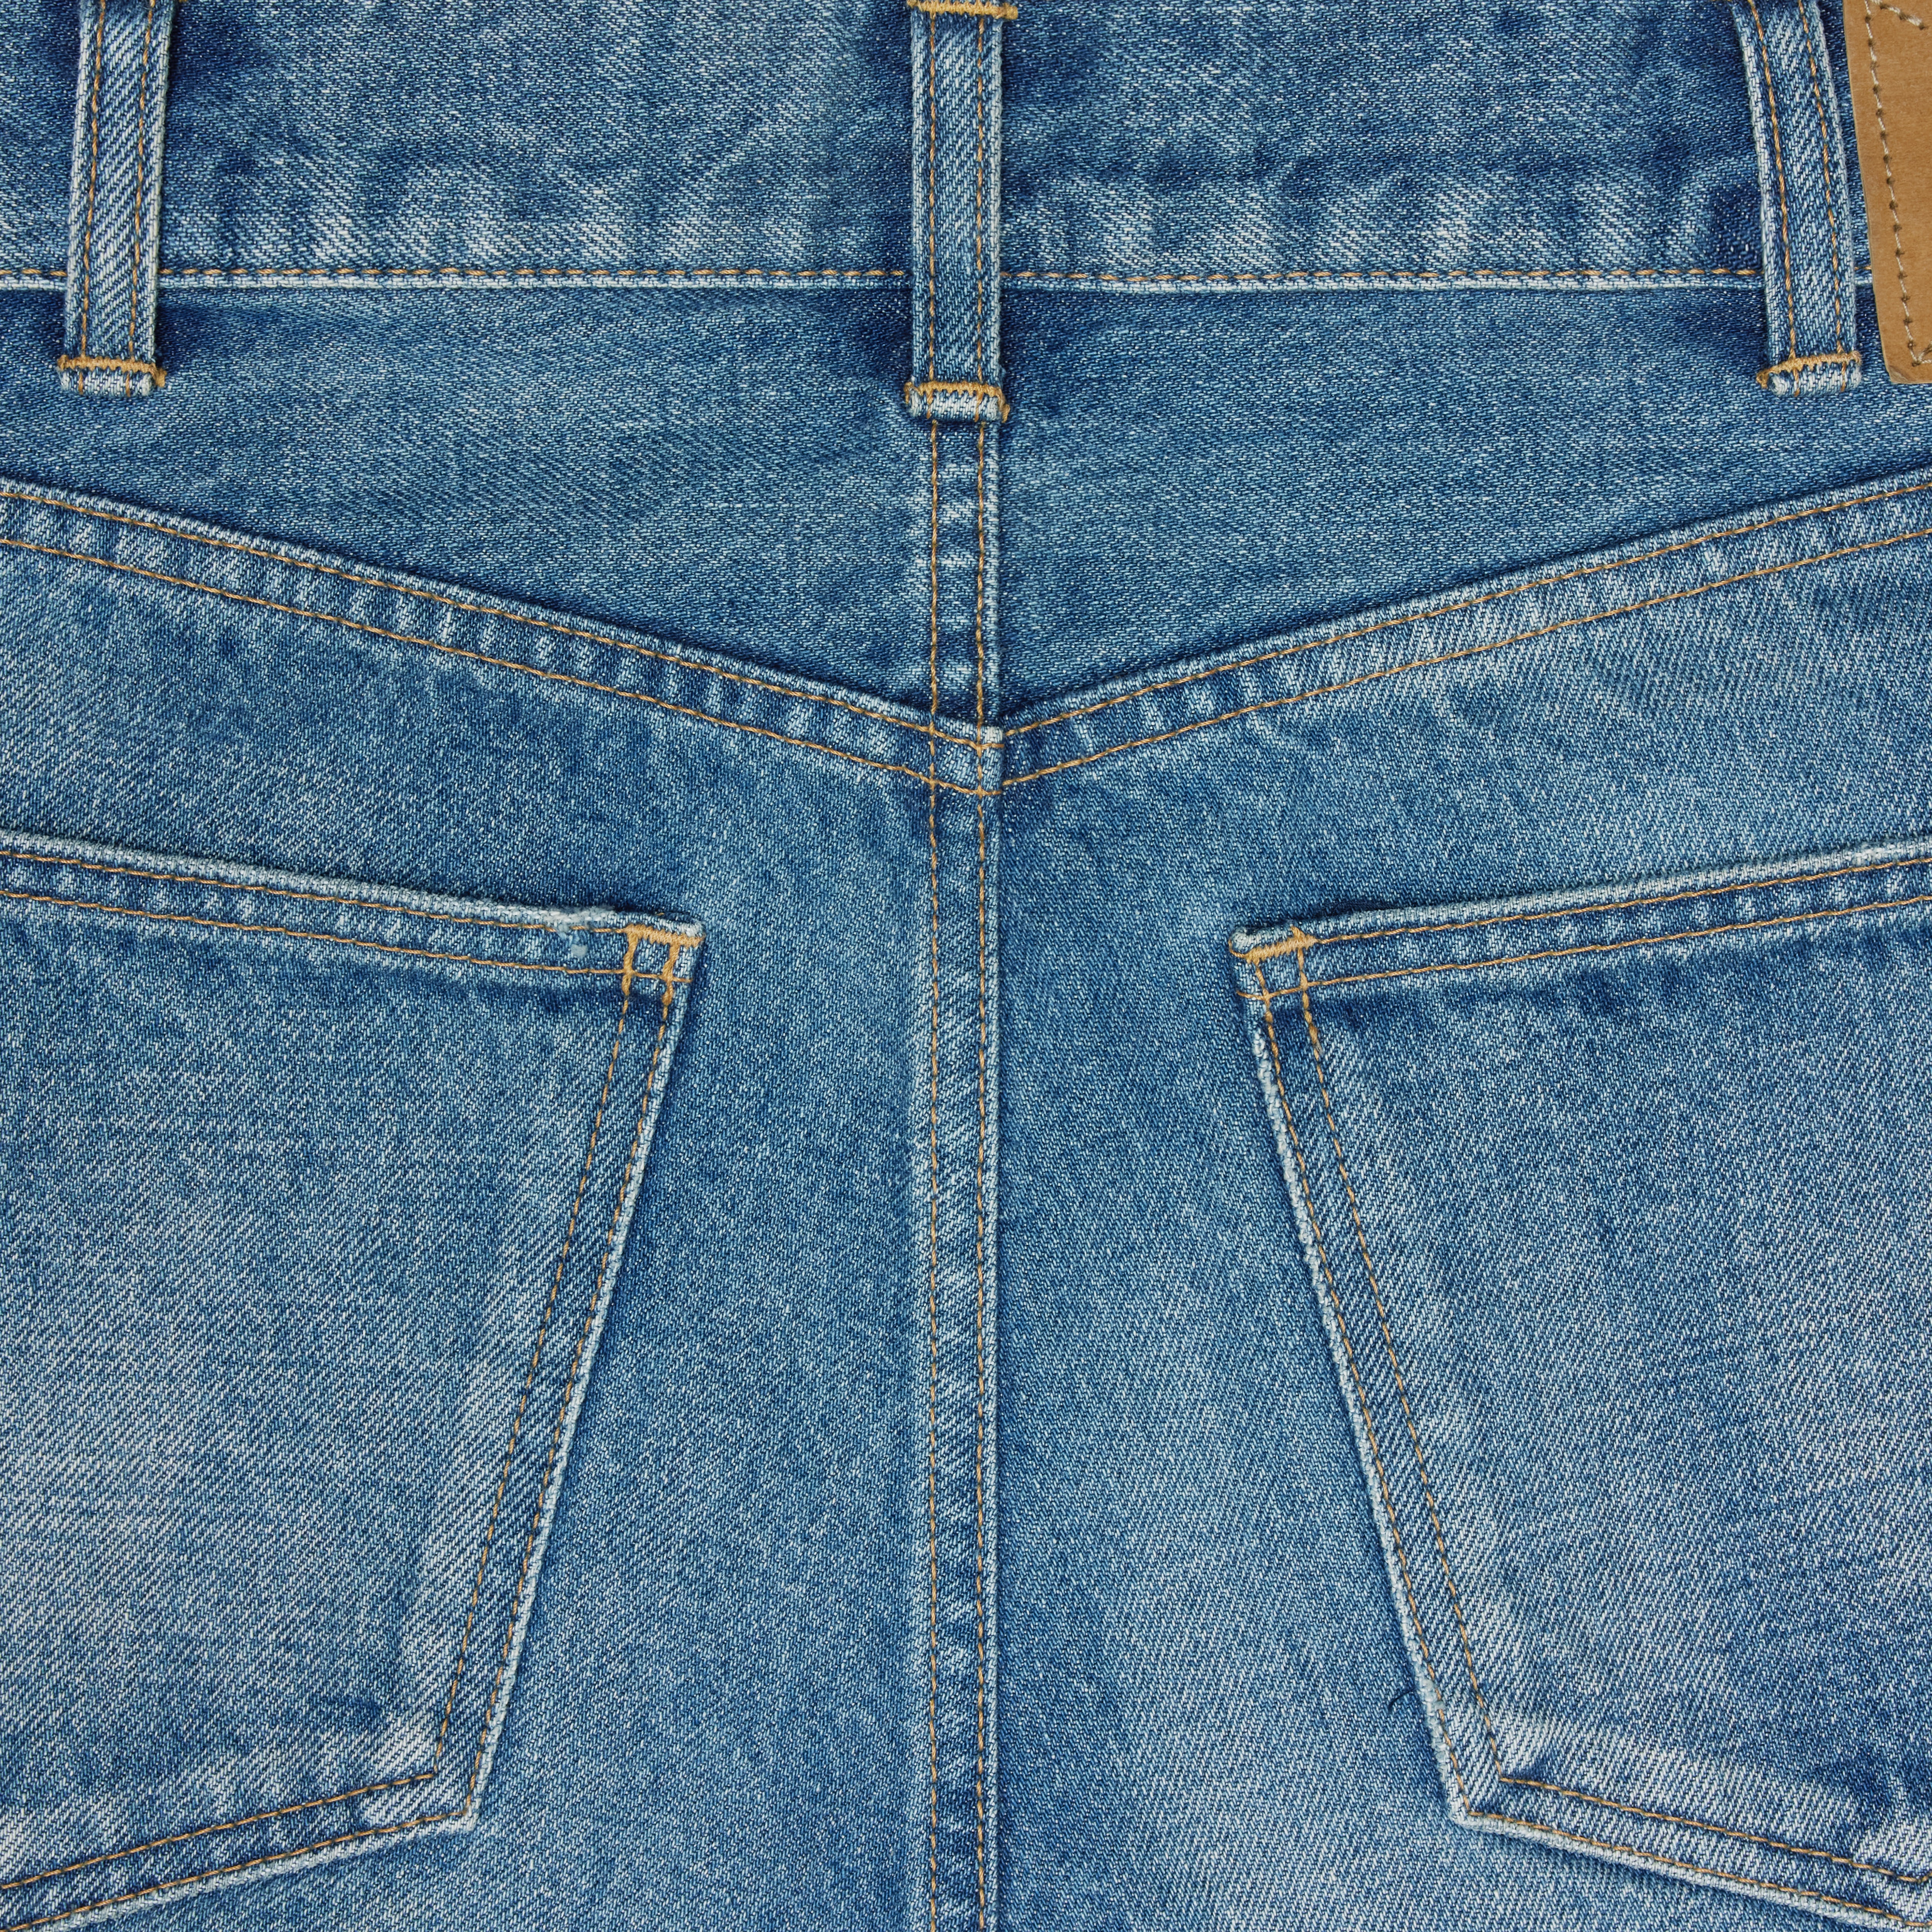 Lou jeans in vintage union wash denim - 3